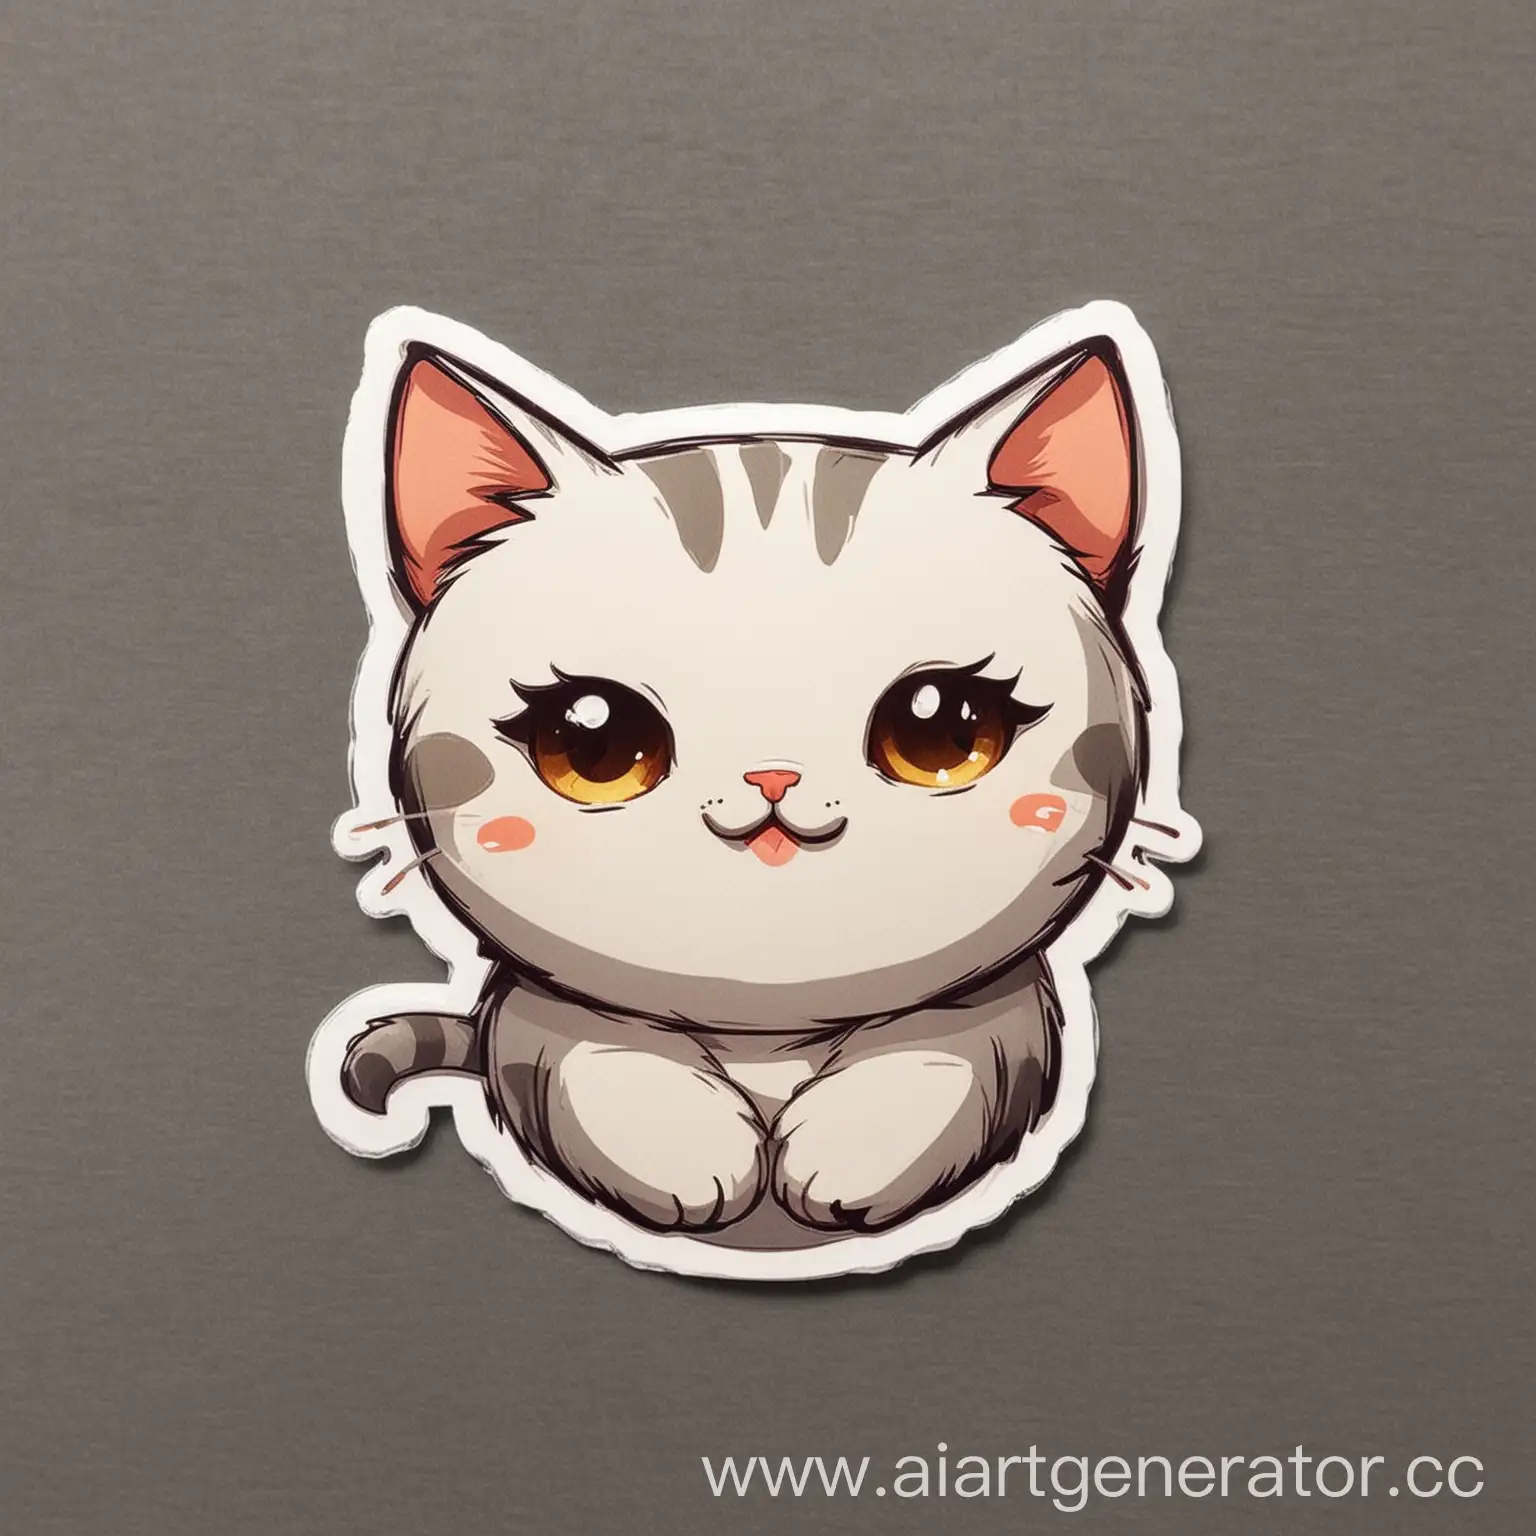 Cute-Cartoon-Cat-Sticker-Design